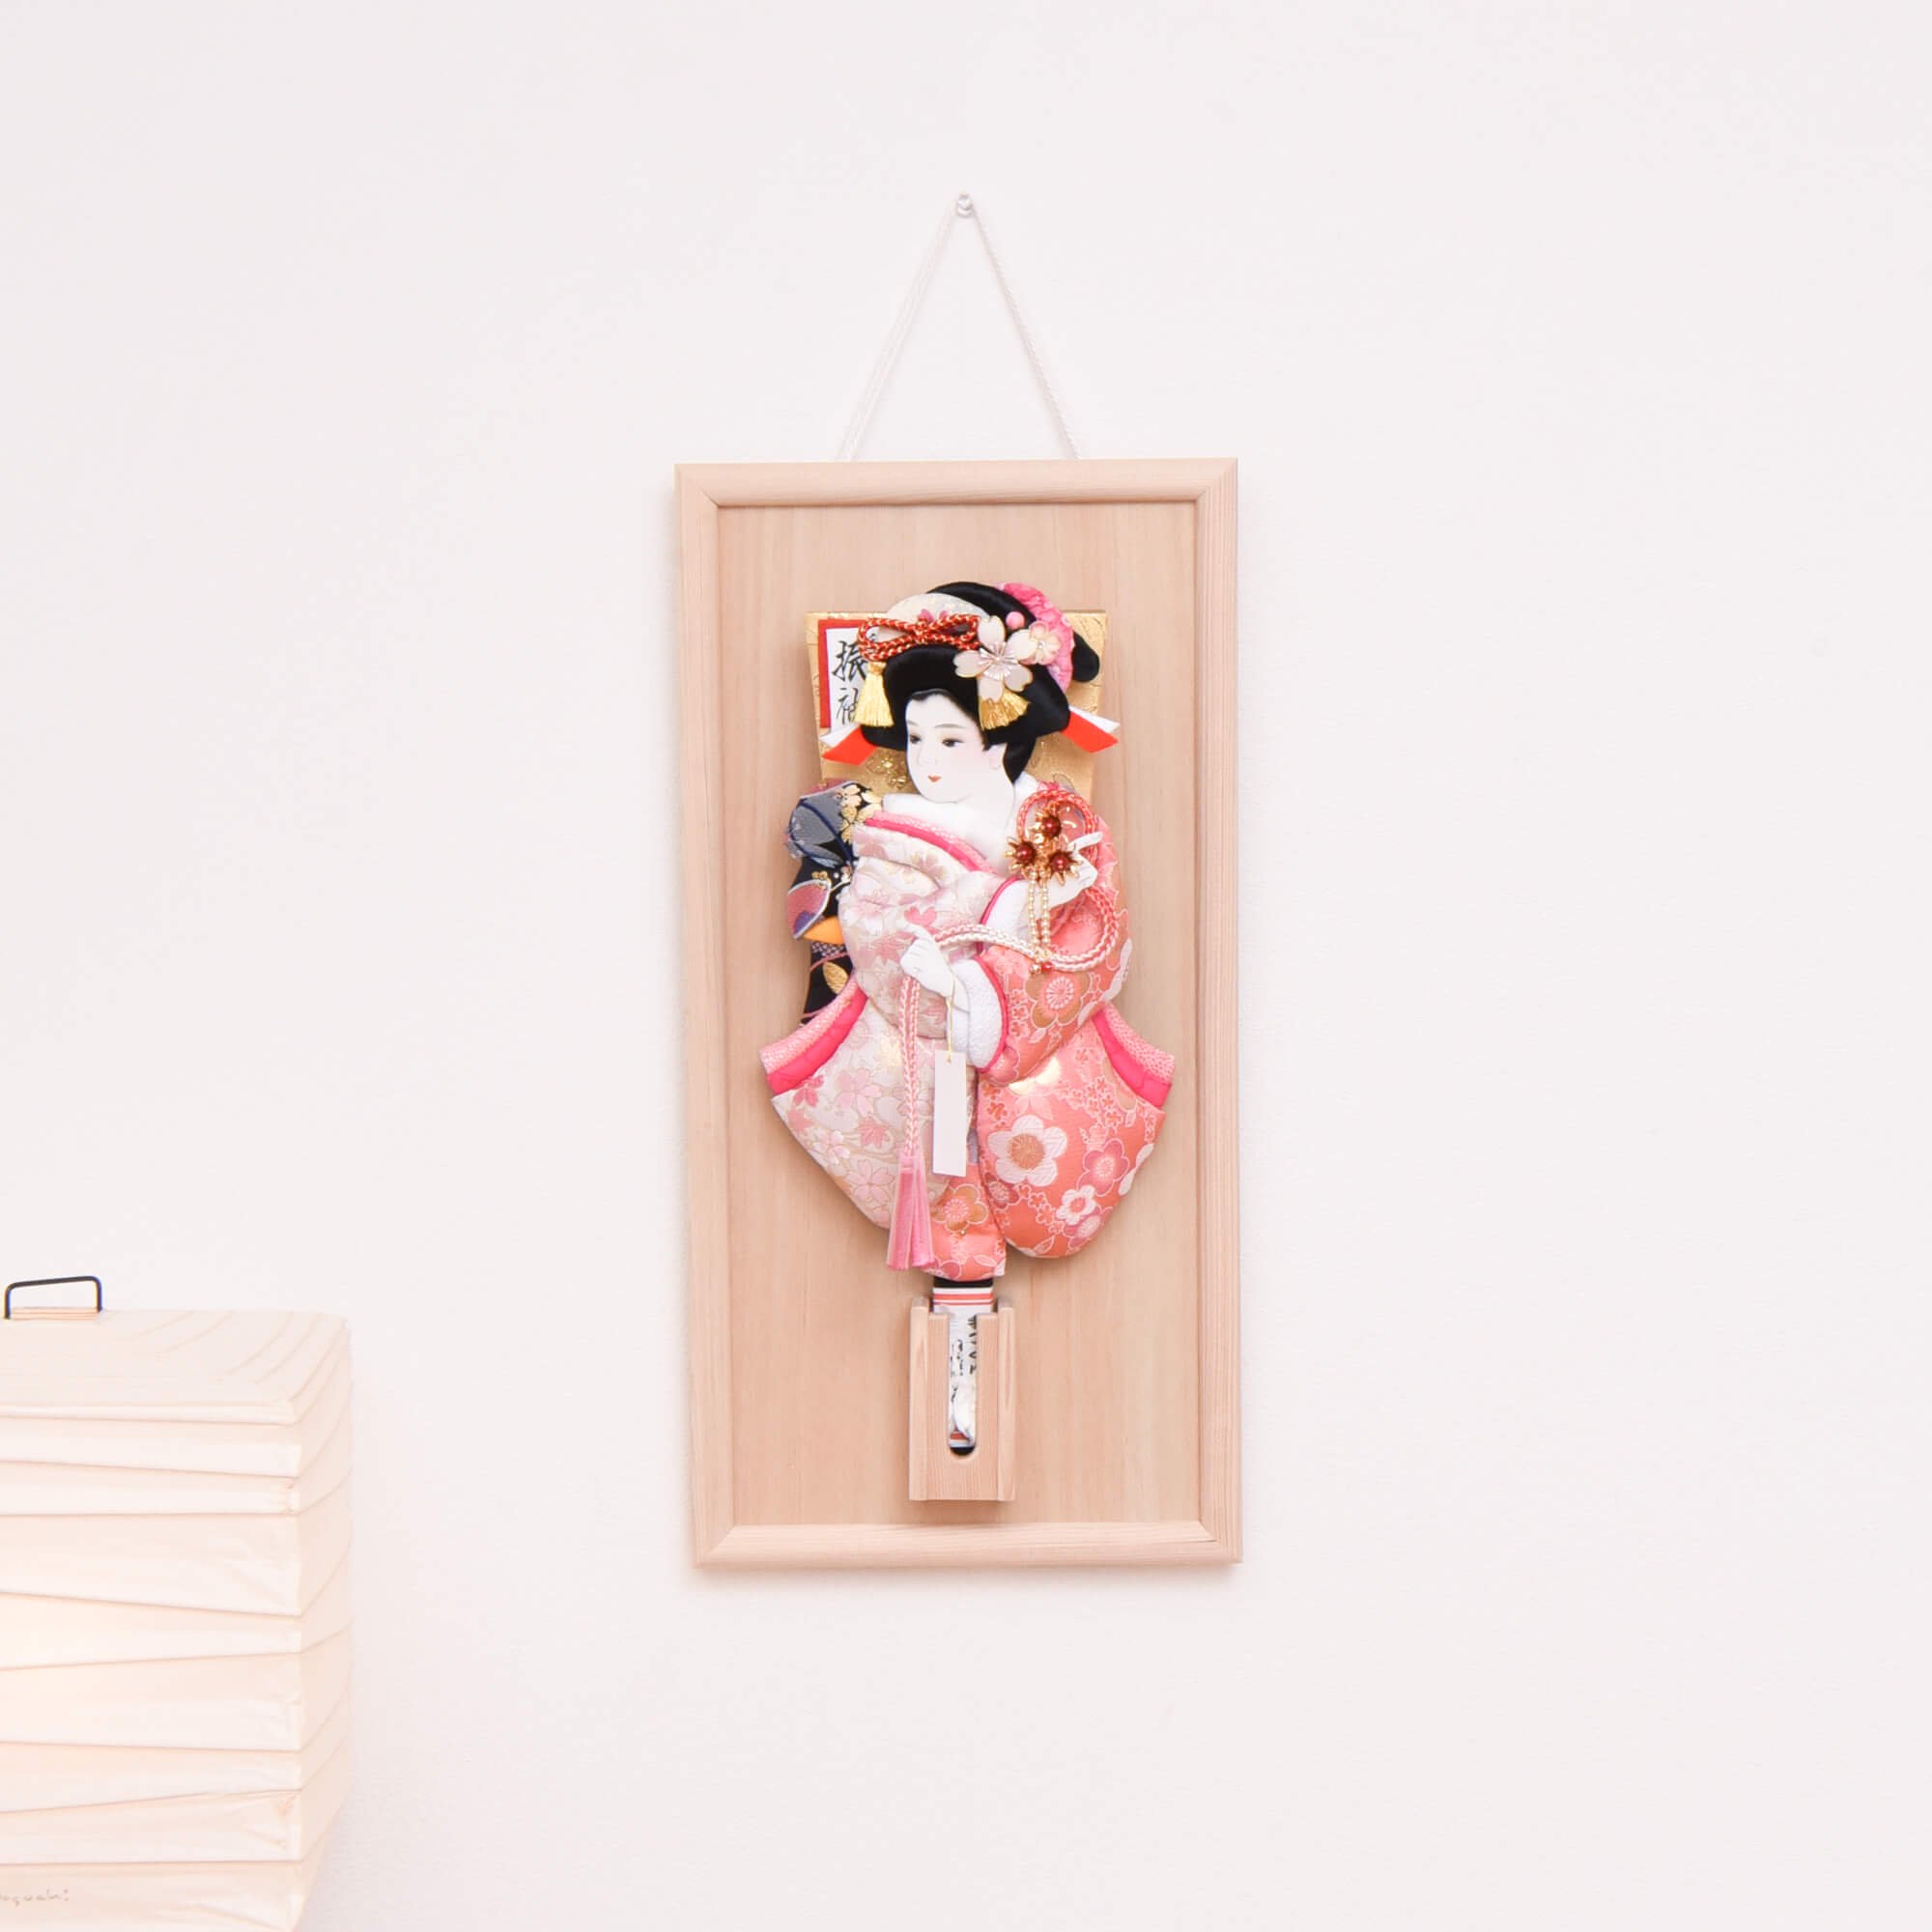 13号 桜金襴 壁掛け額入り羽子板 シブカワ(壁掛け 羽子板 コンパクト 